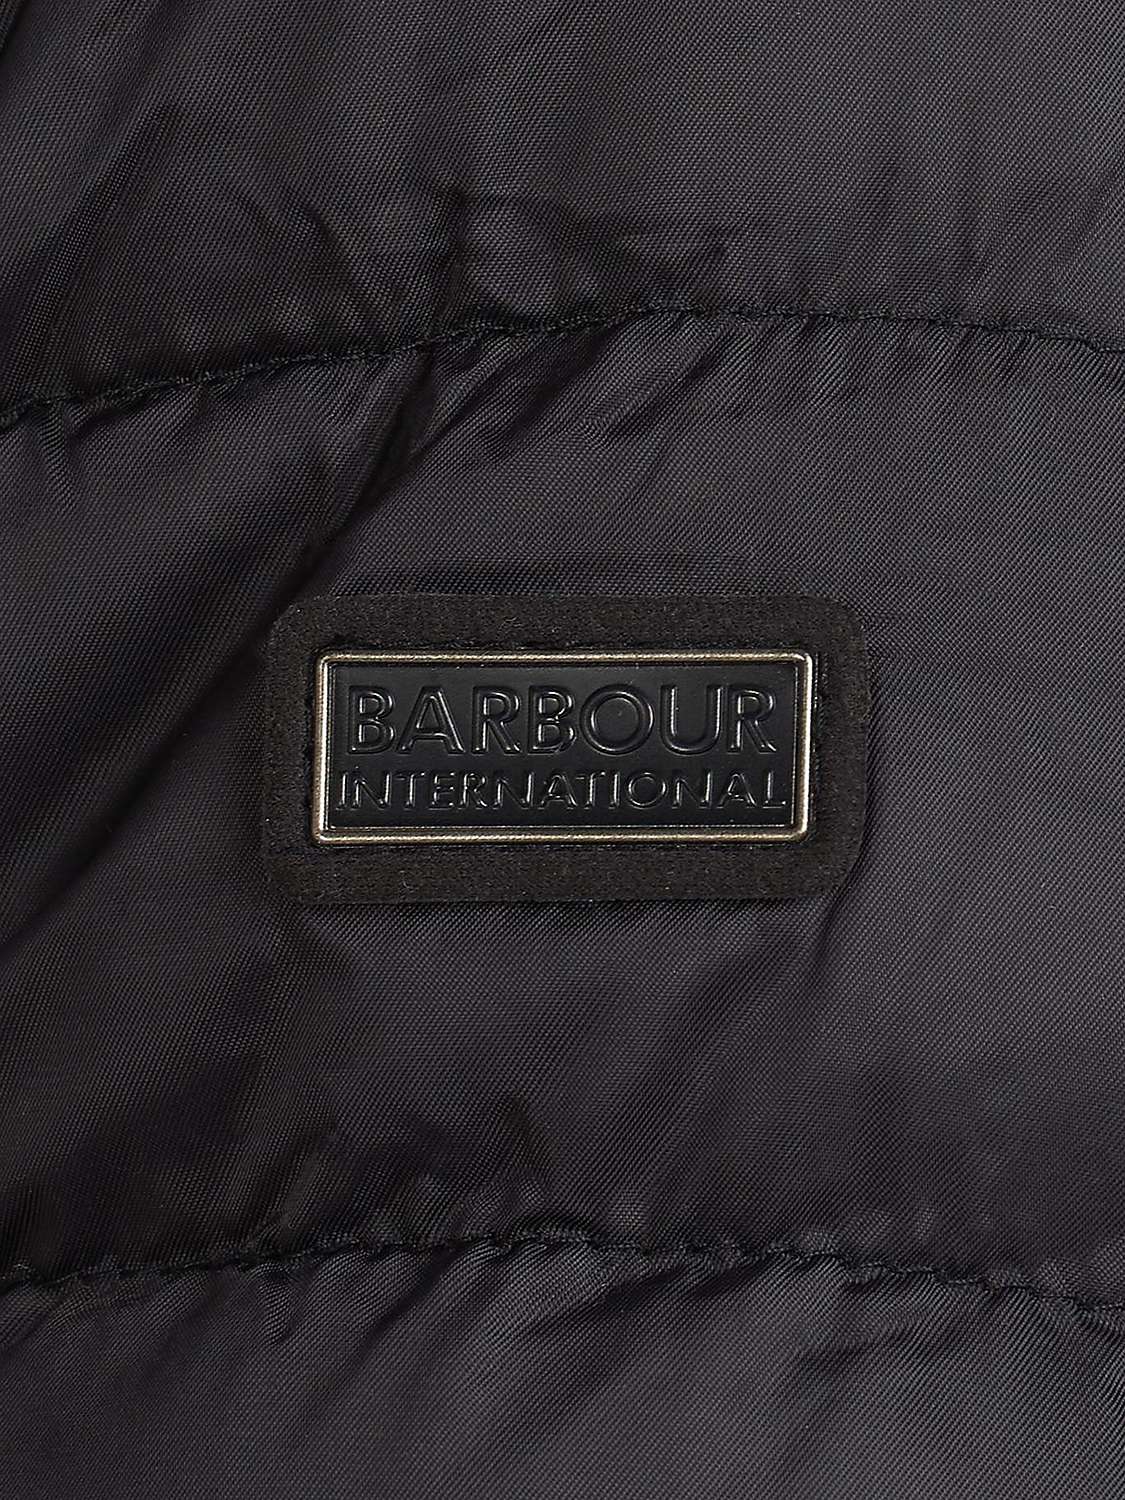 Barbour International Impeller Quilted Jacket, Black at John Lewis ...